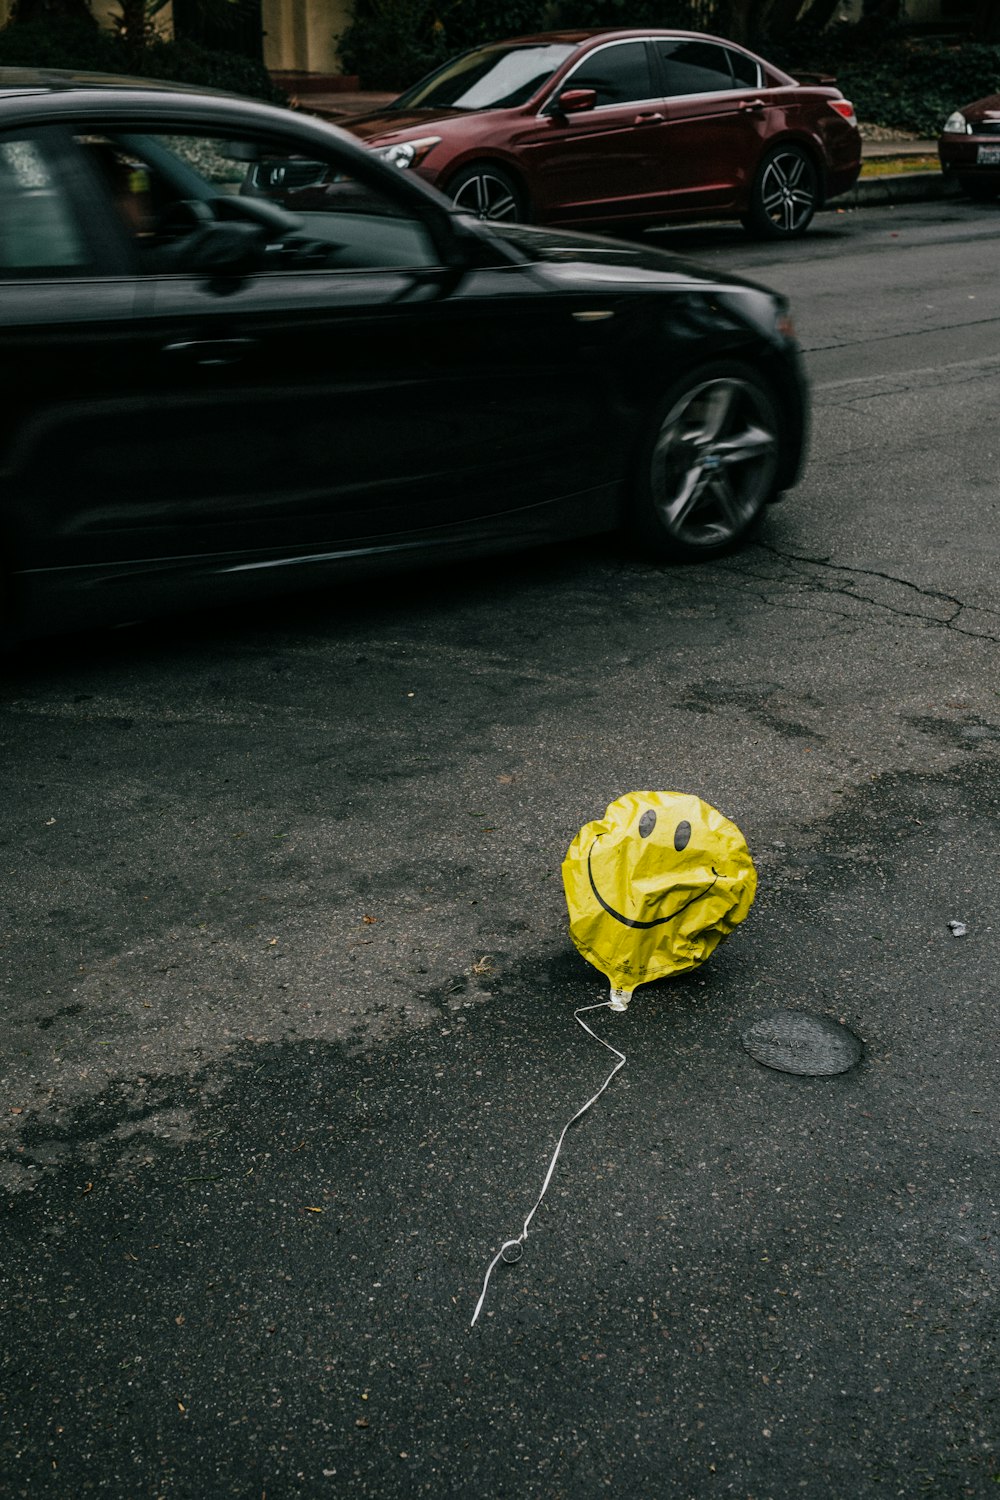 smiling emoji balloon beside black car during daytime